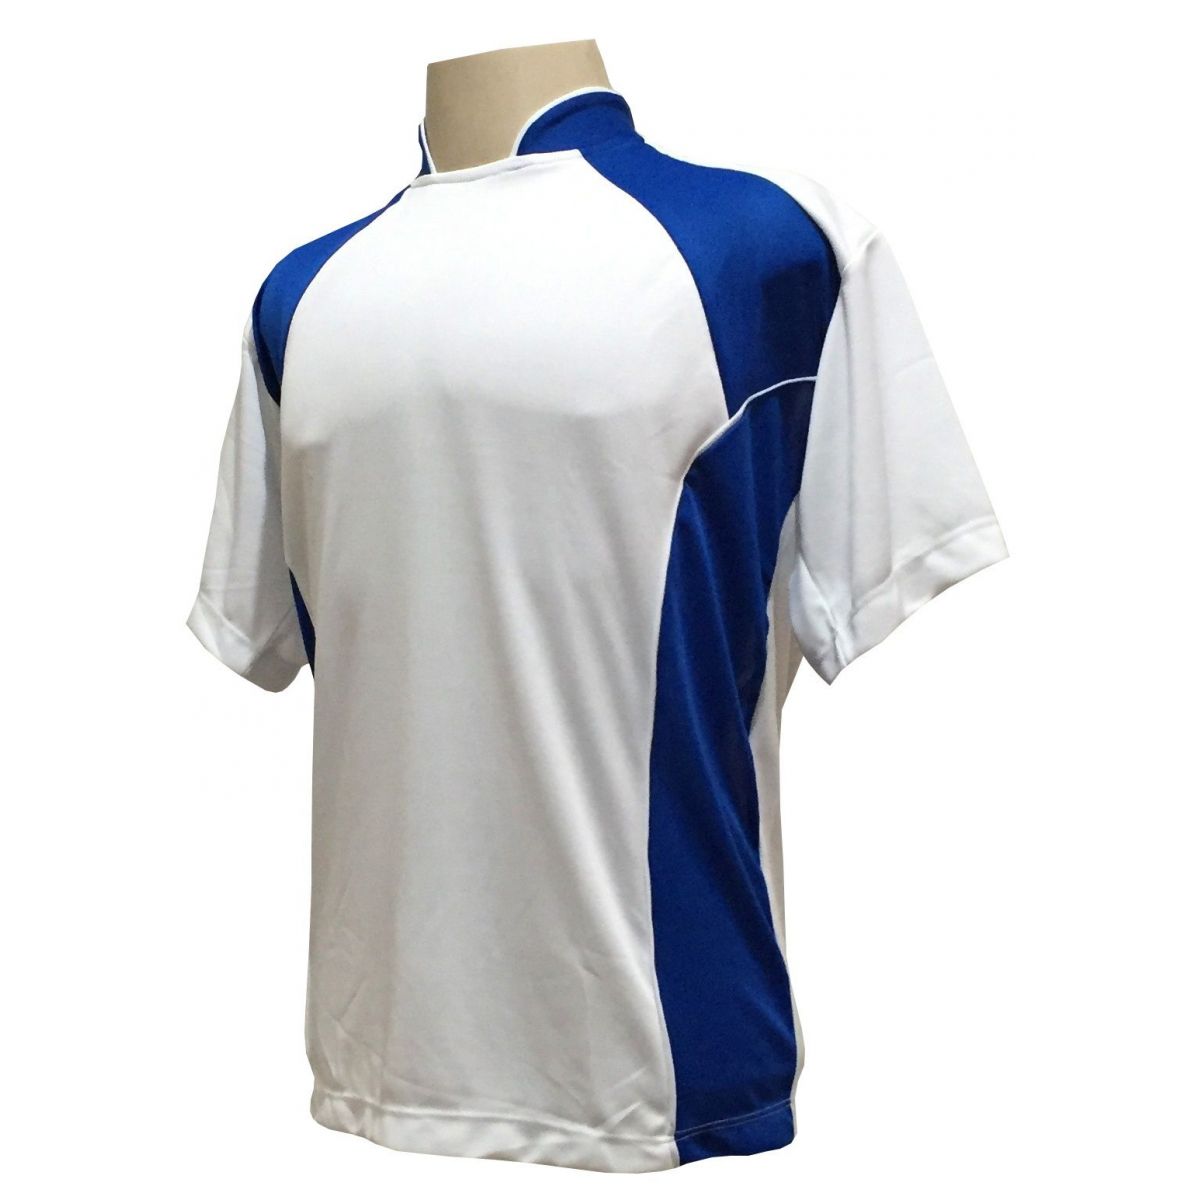 Uniforme Esportivo Completo modelo Suécia 14+1 (14 camisas Branco/Royal + 14 calções Madrid Branco+ 14 pares de meiões + 1 conjunto de goleiro) + Brindes